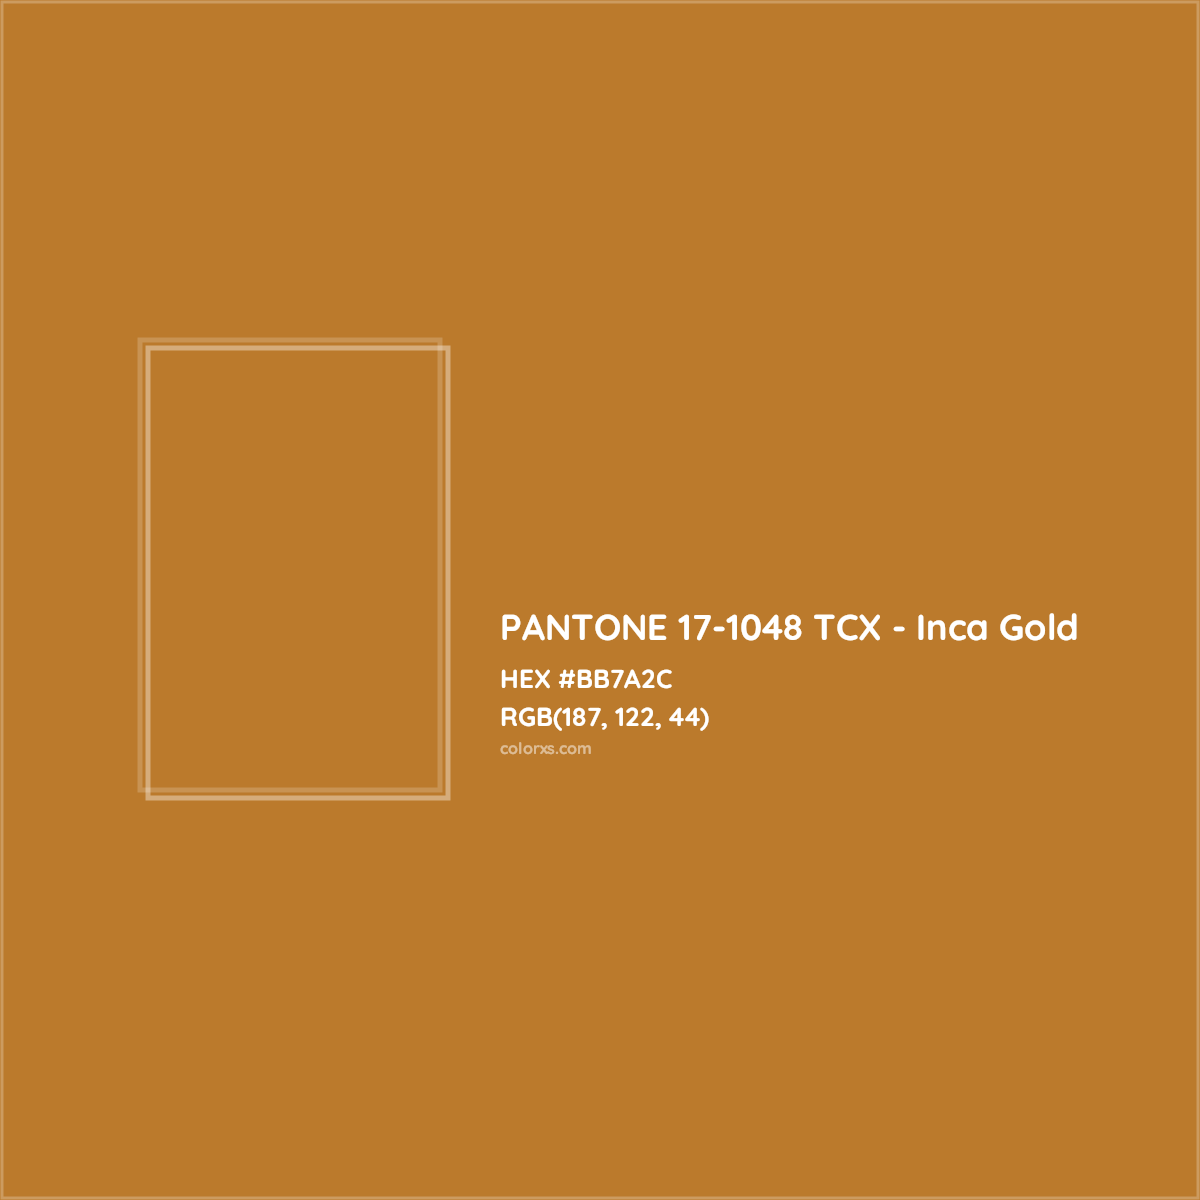 HEX #BB7A2C PANTONE 17-1048 TCX - Inca Gold CMS Pantone TCX - Color Code